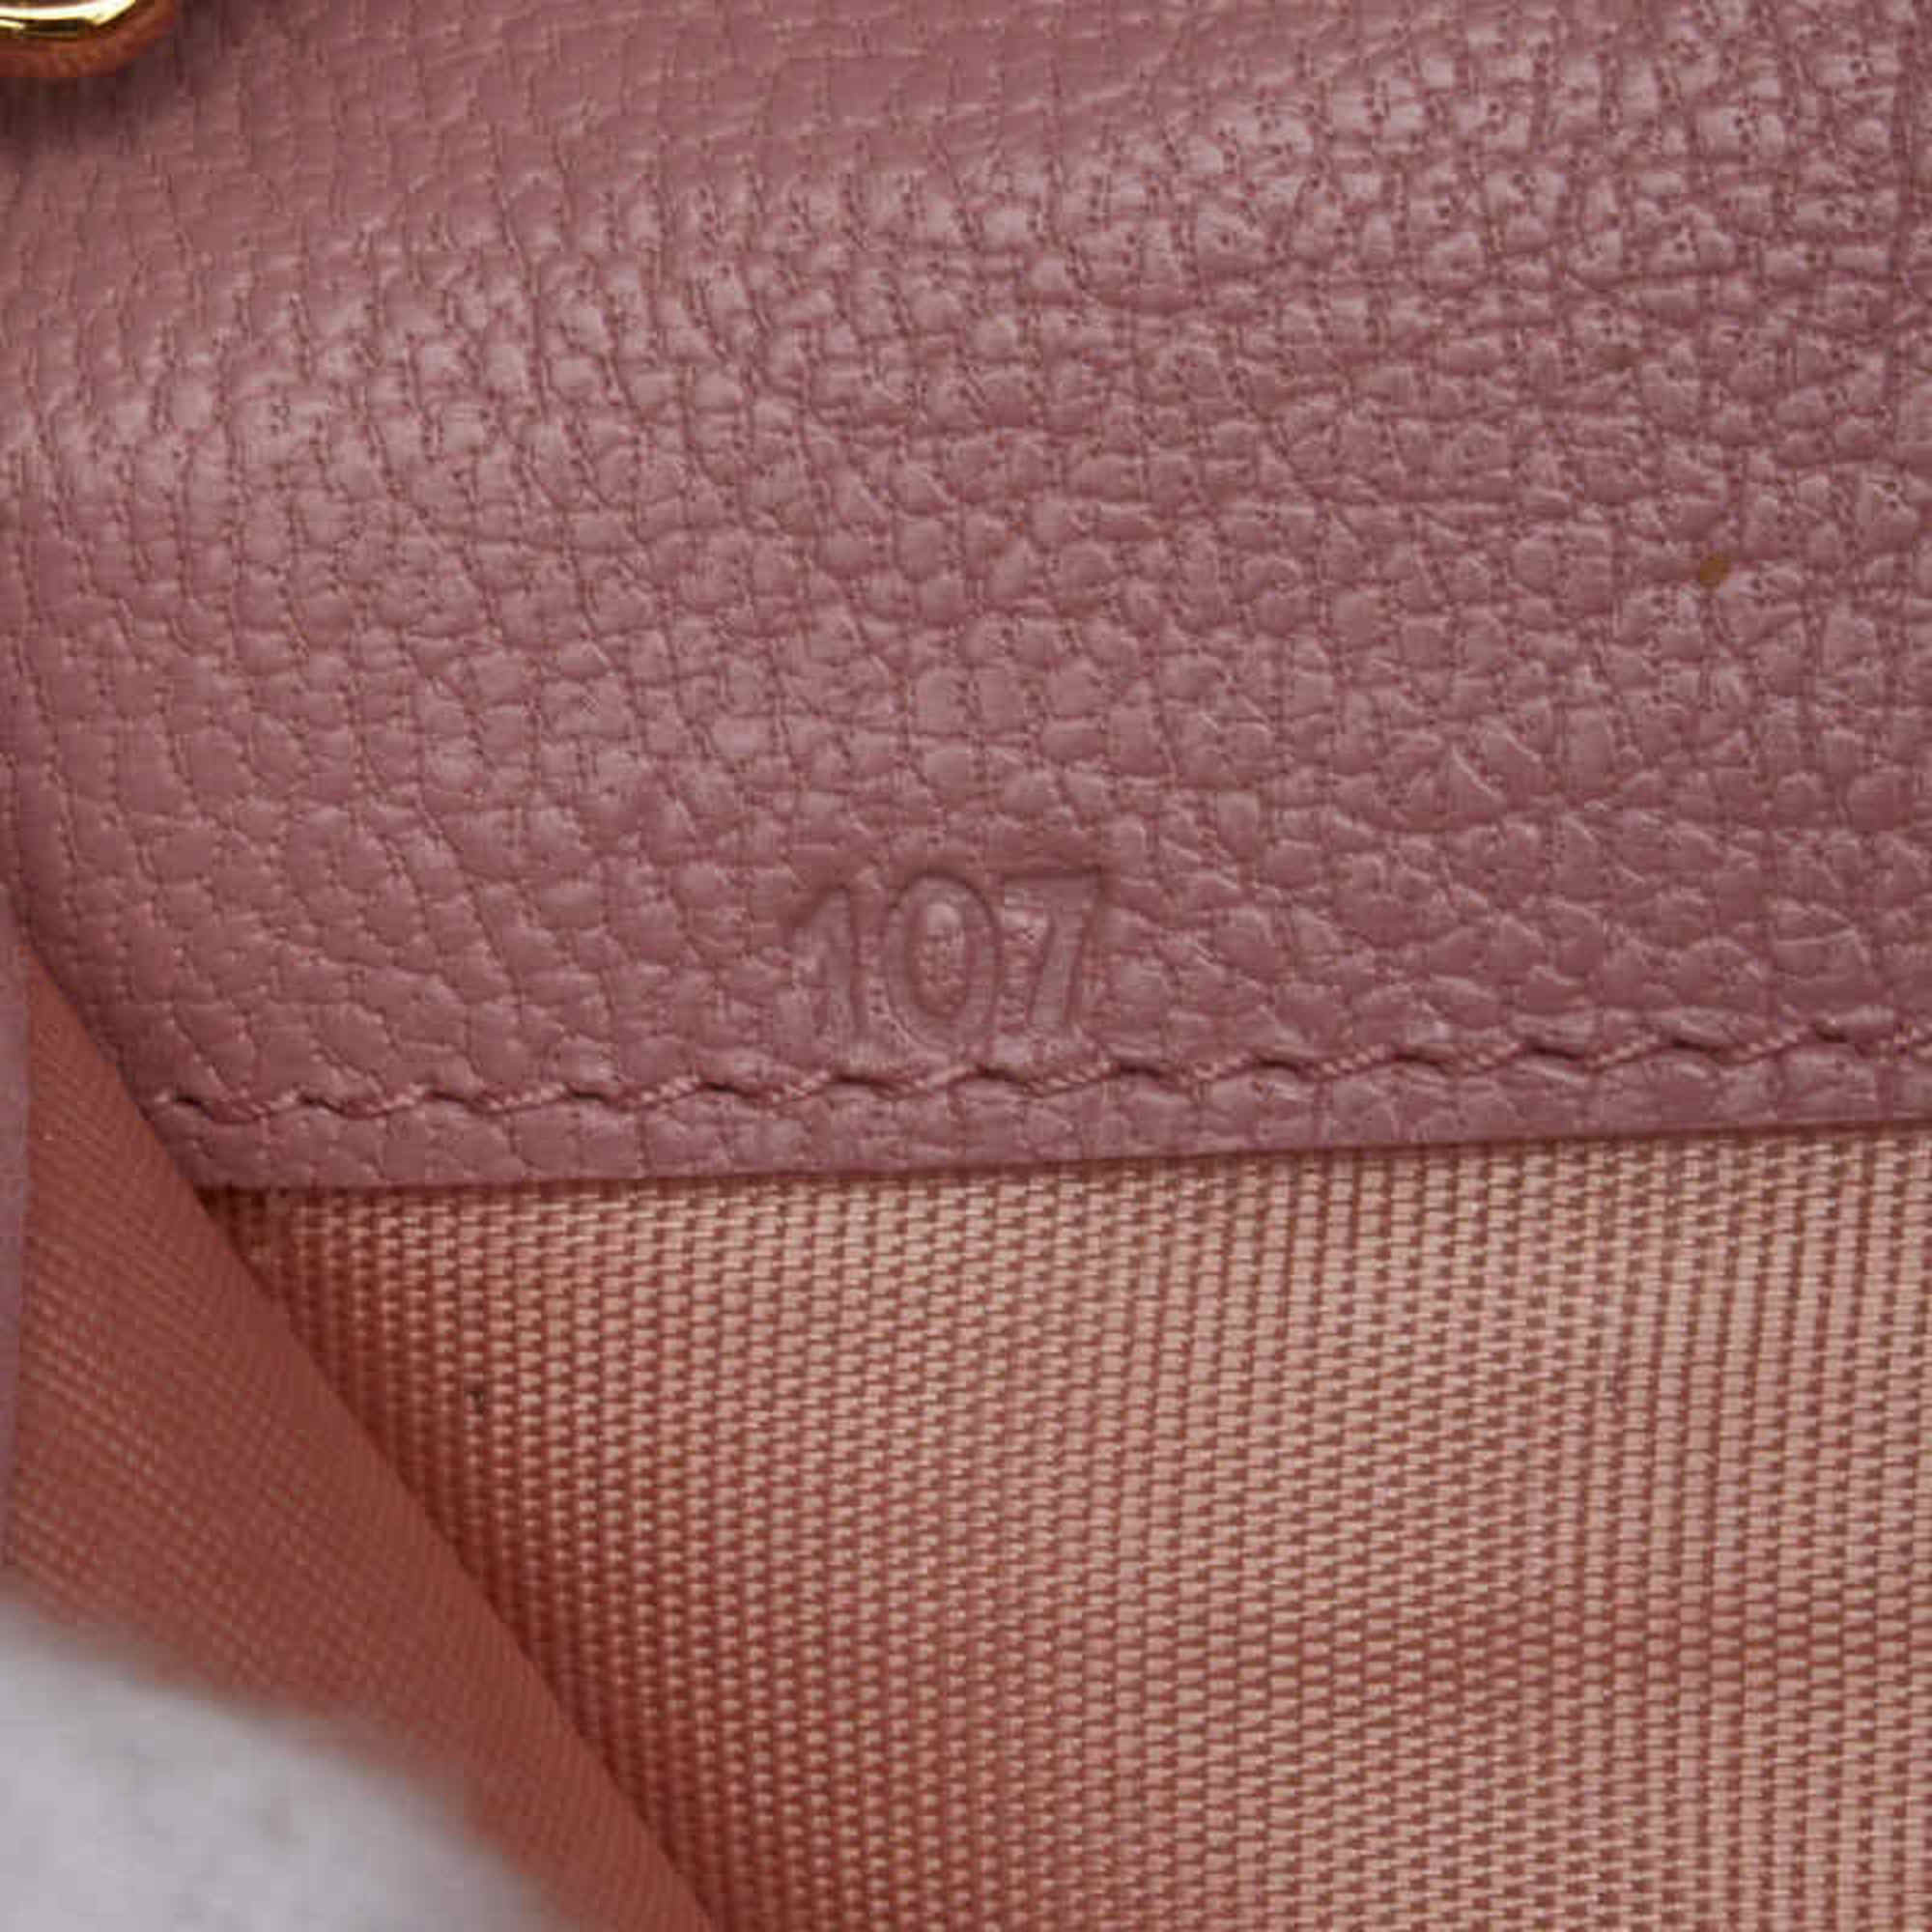 Miu Miu Miu Long Wallet Chain Shoulder Pink Leather Women's MIUMIU